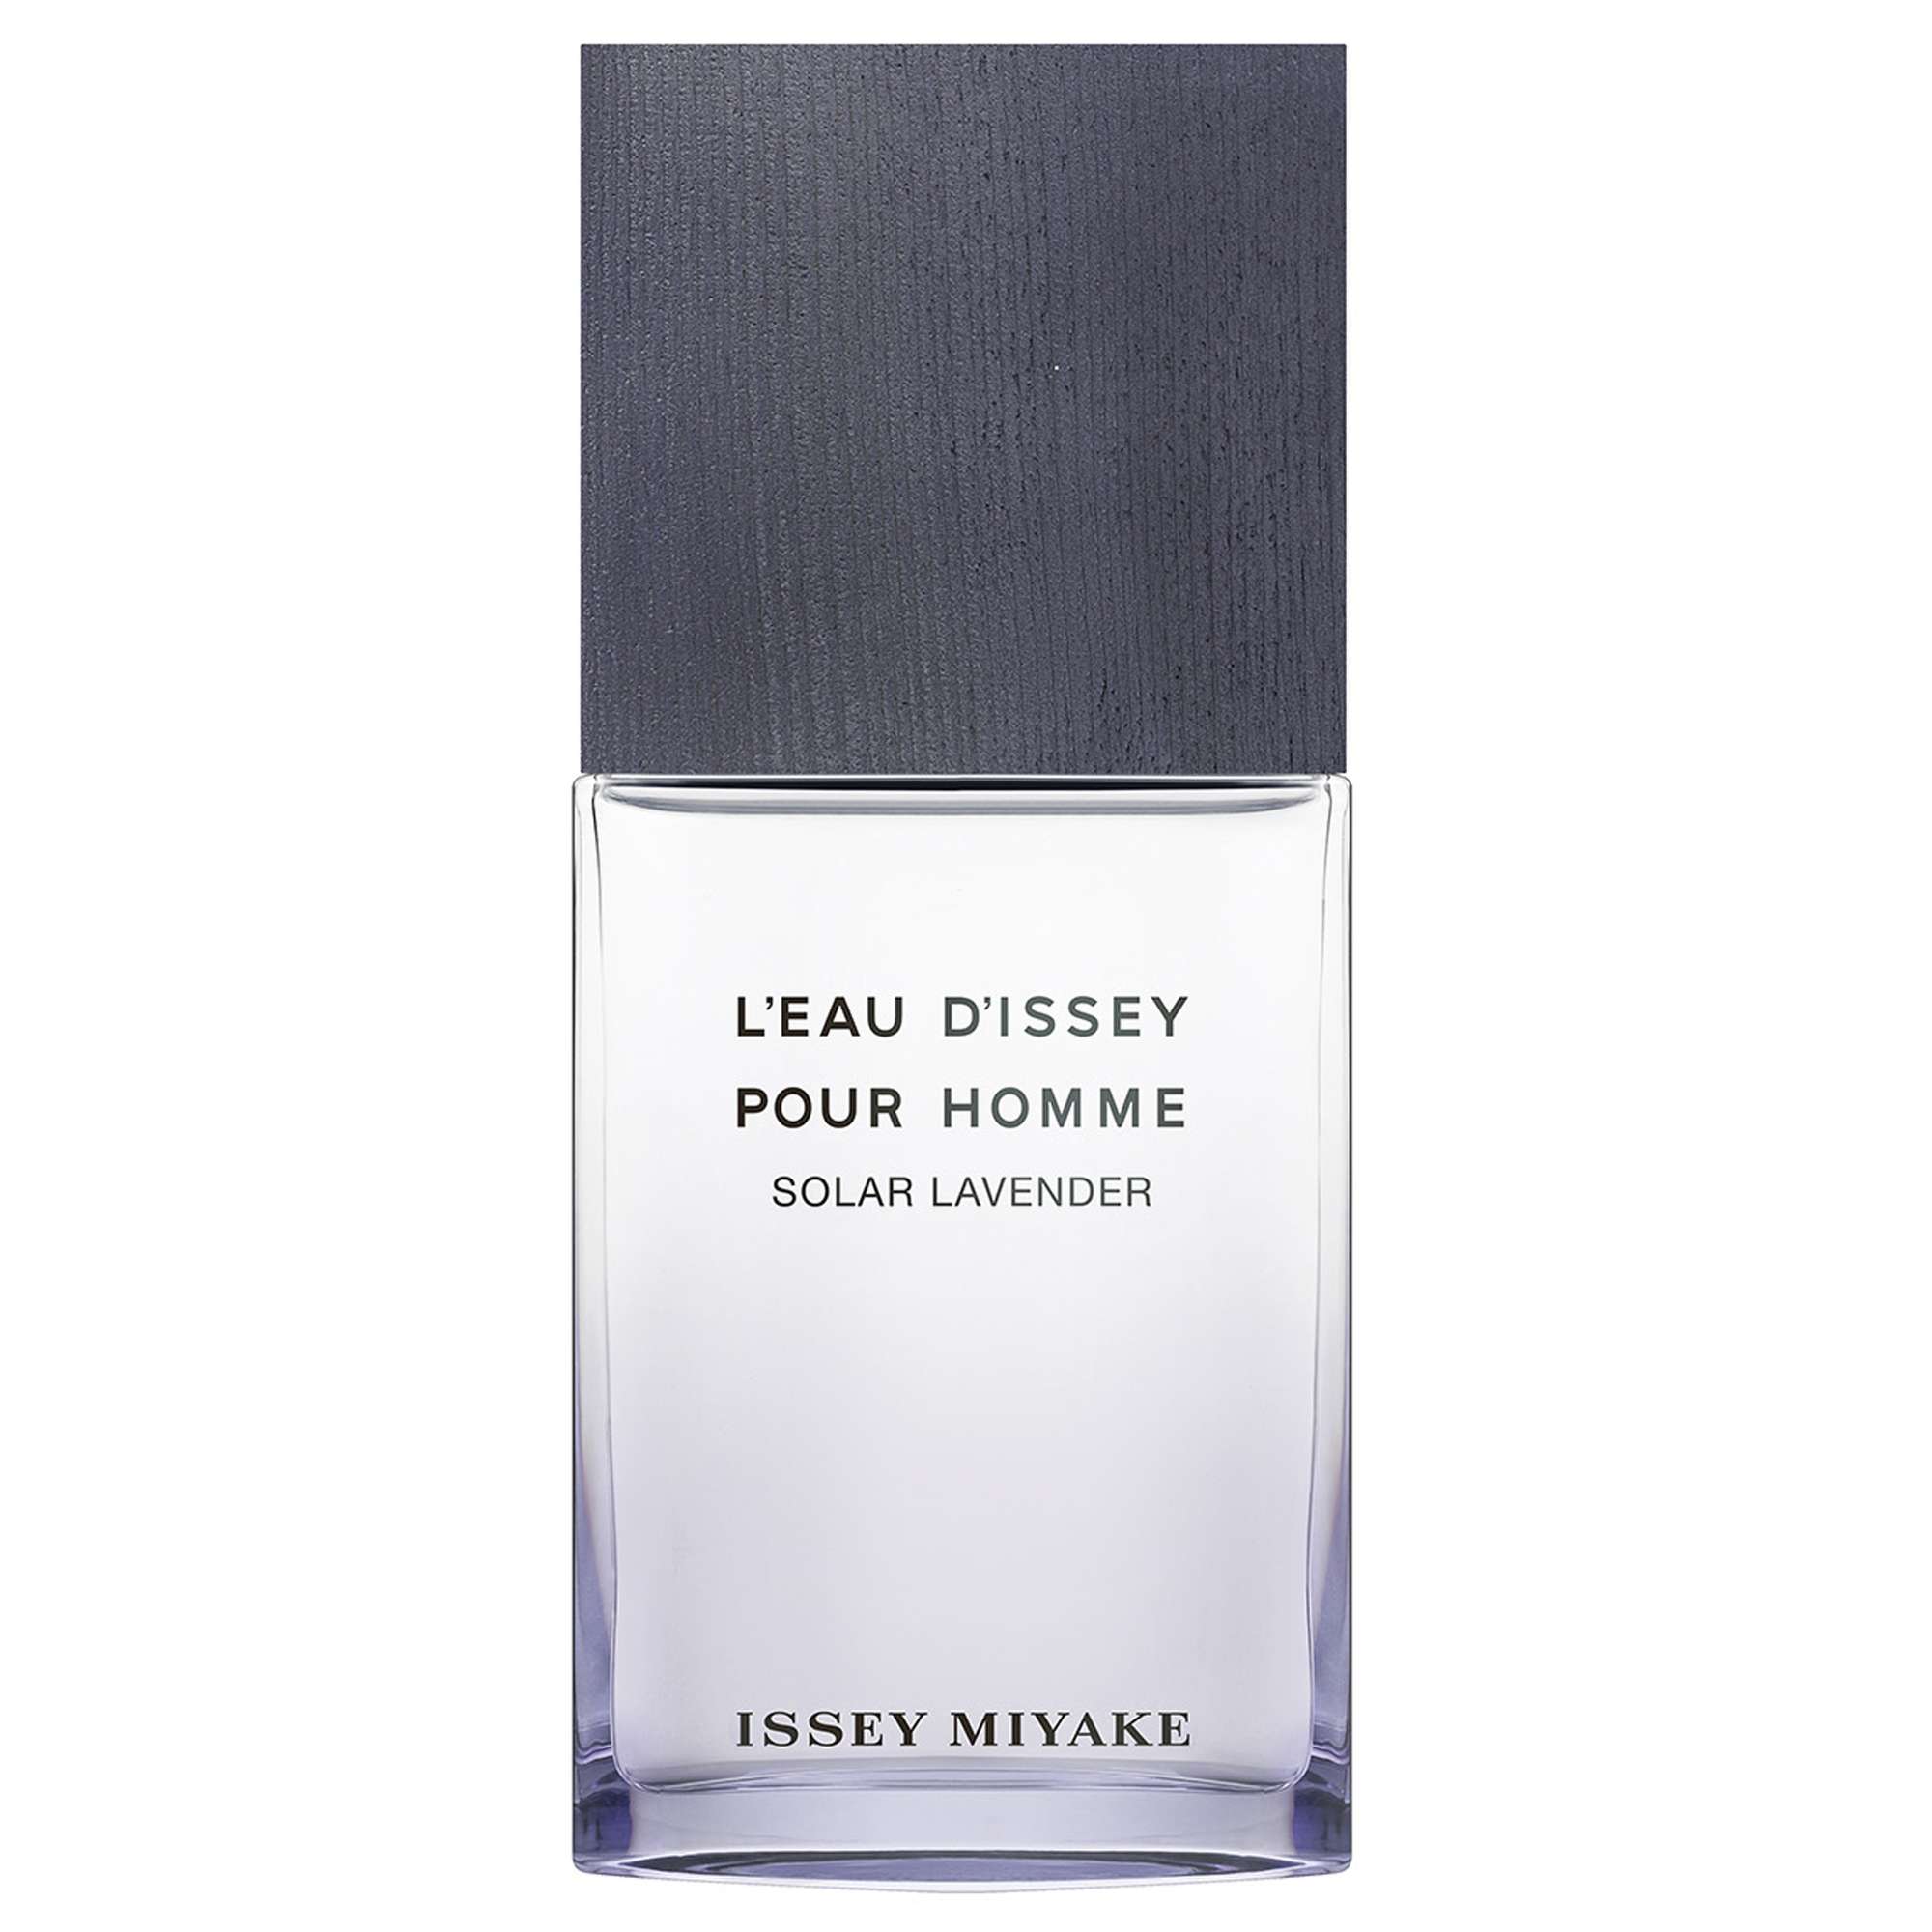 Photos - Men's Fragrance Issey Miyake L'Eau d'Issey Pour Homme Solar Lavender Eau de Toilette Spray 